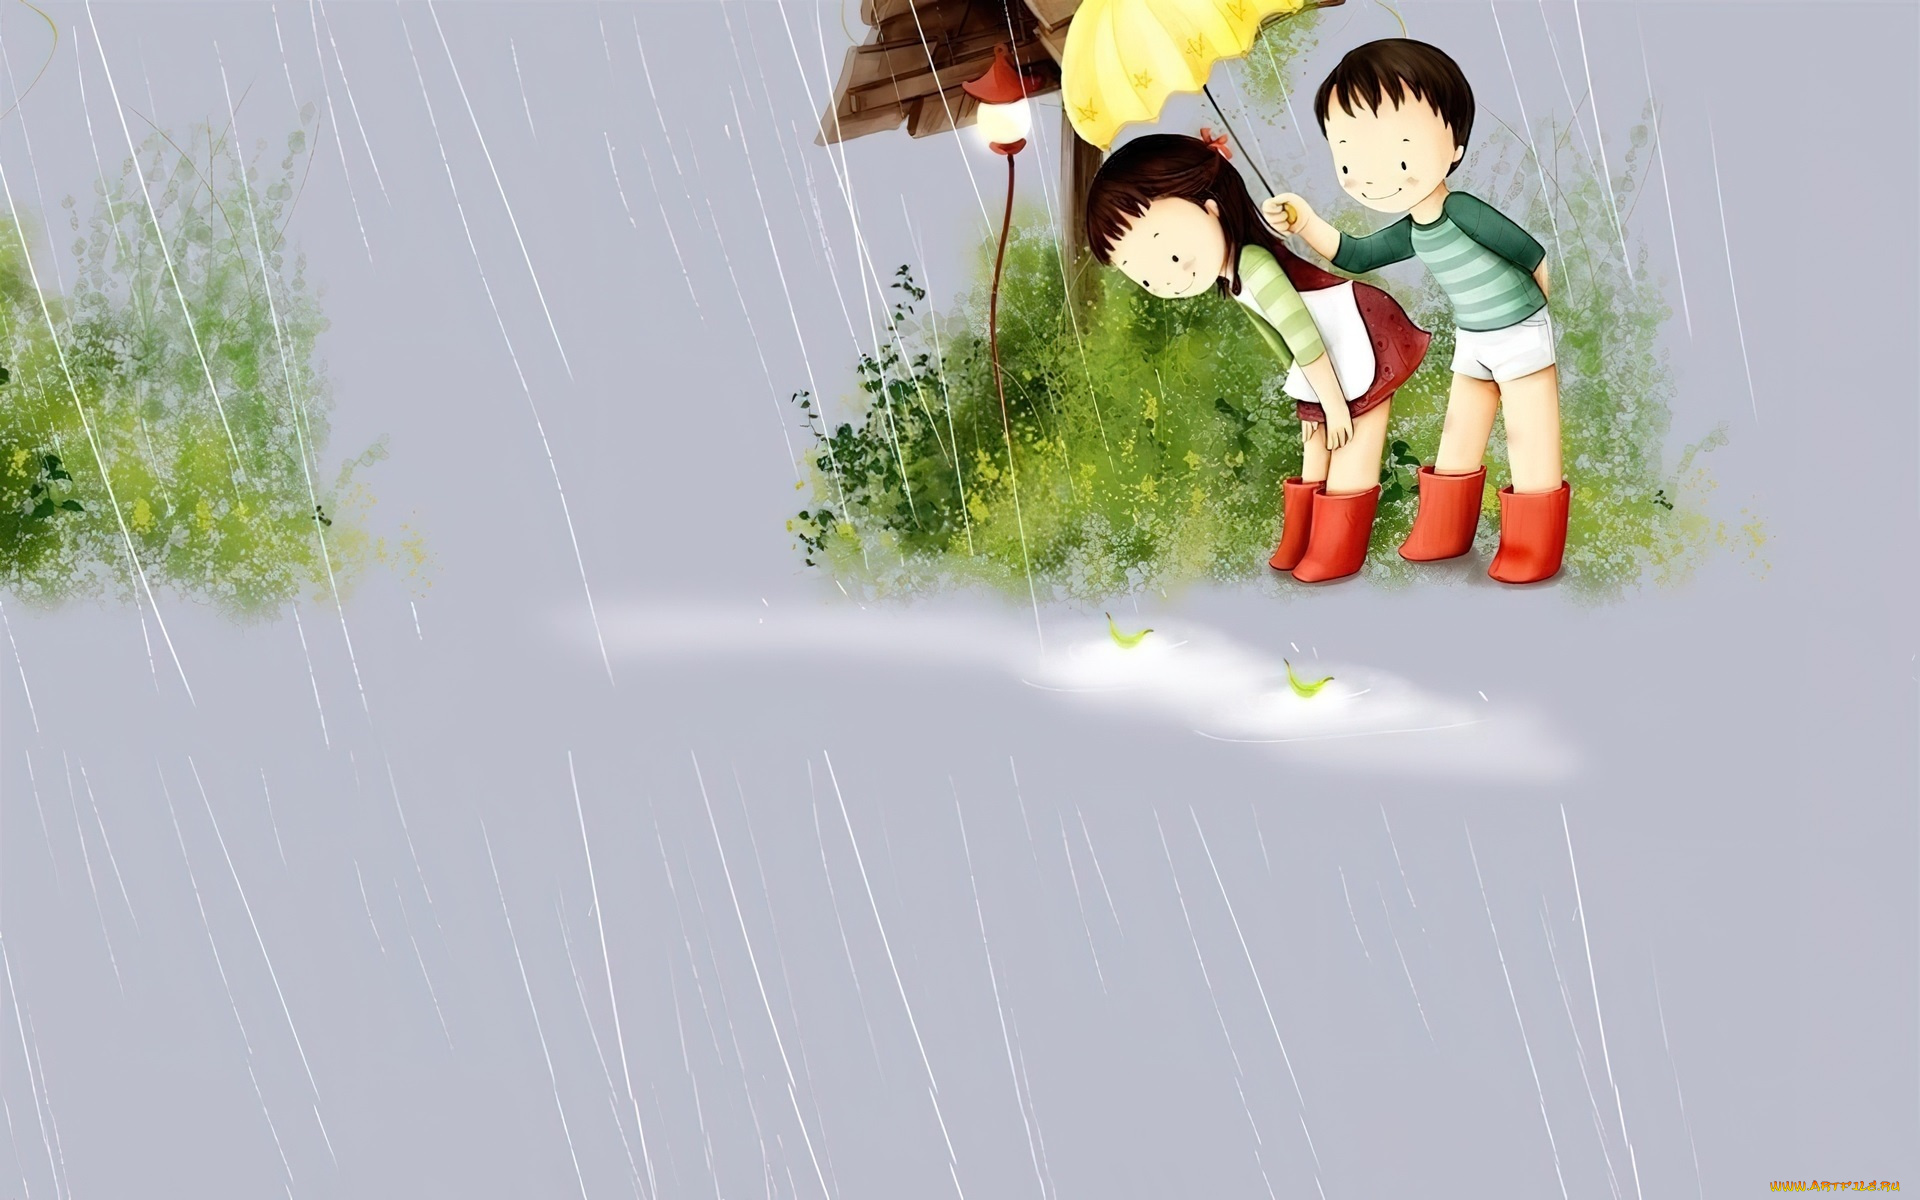 рисованное, дети, мальчик, девочка, зонт, дождь